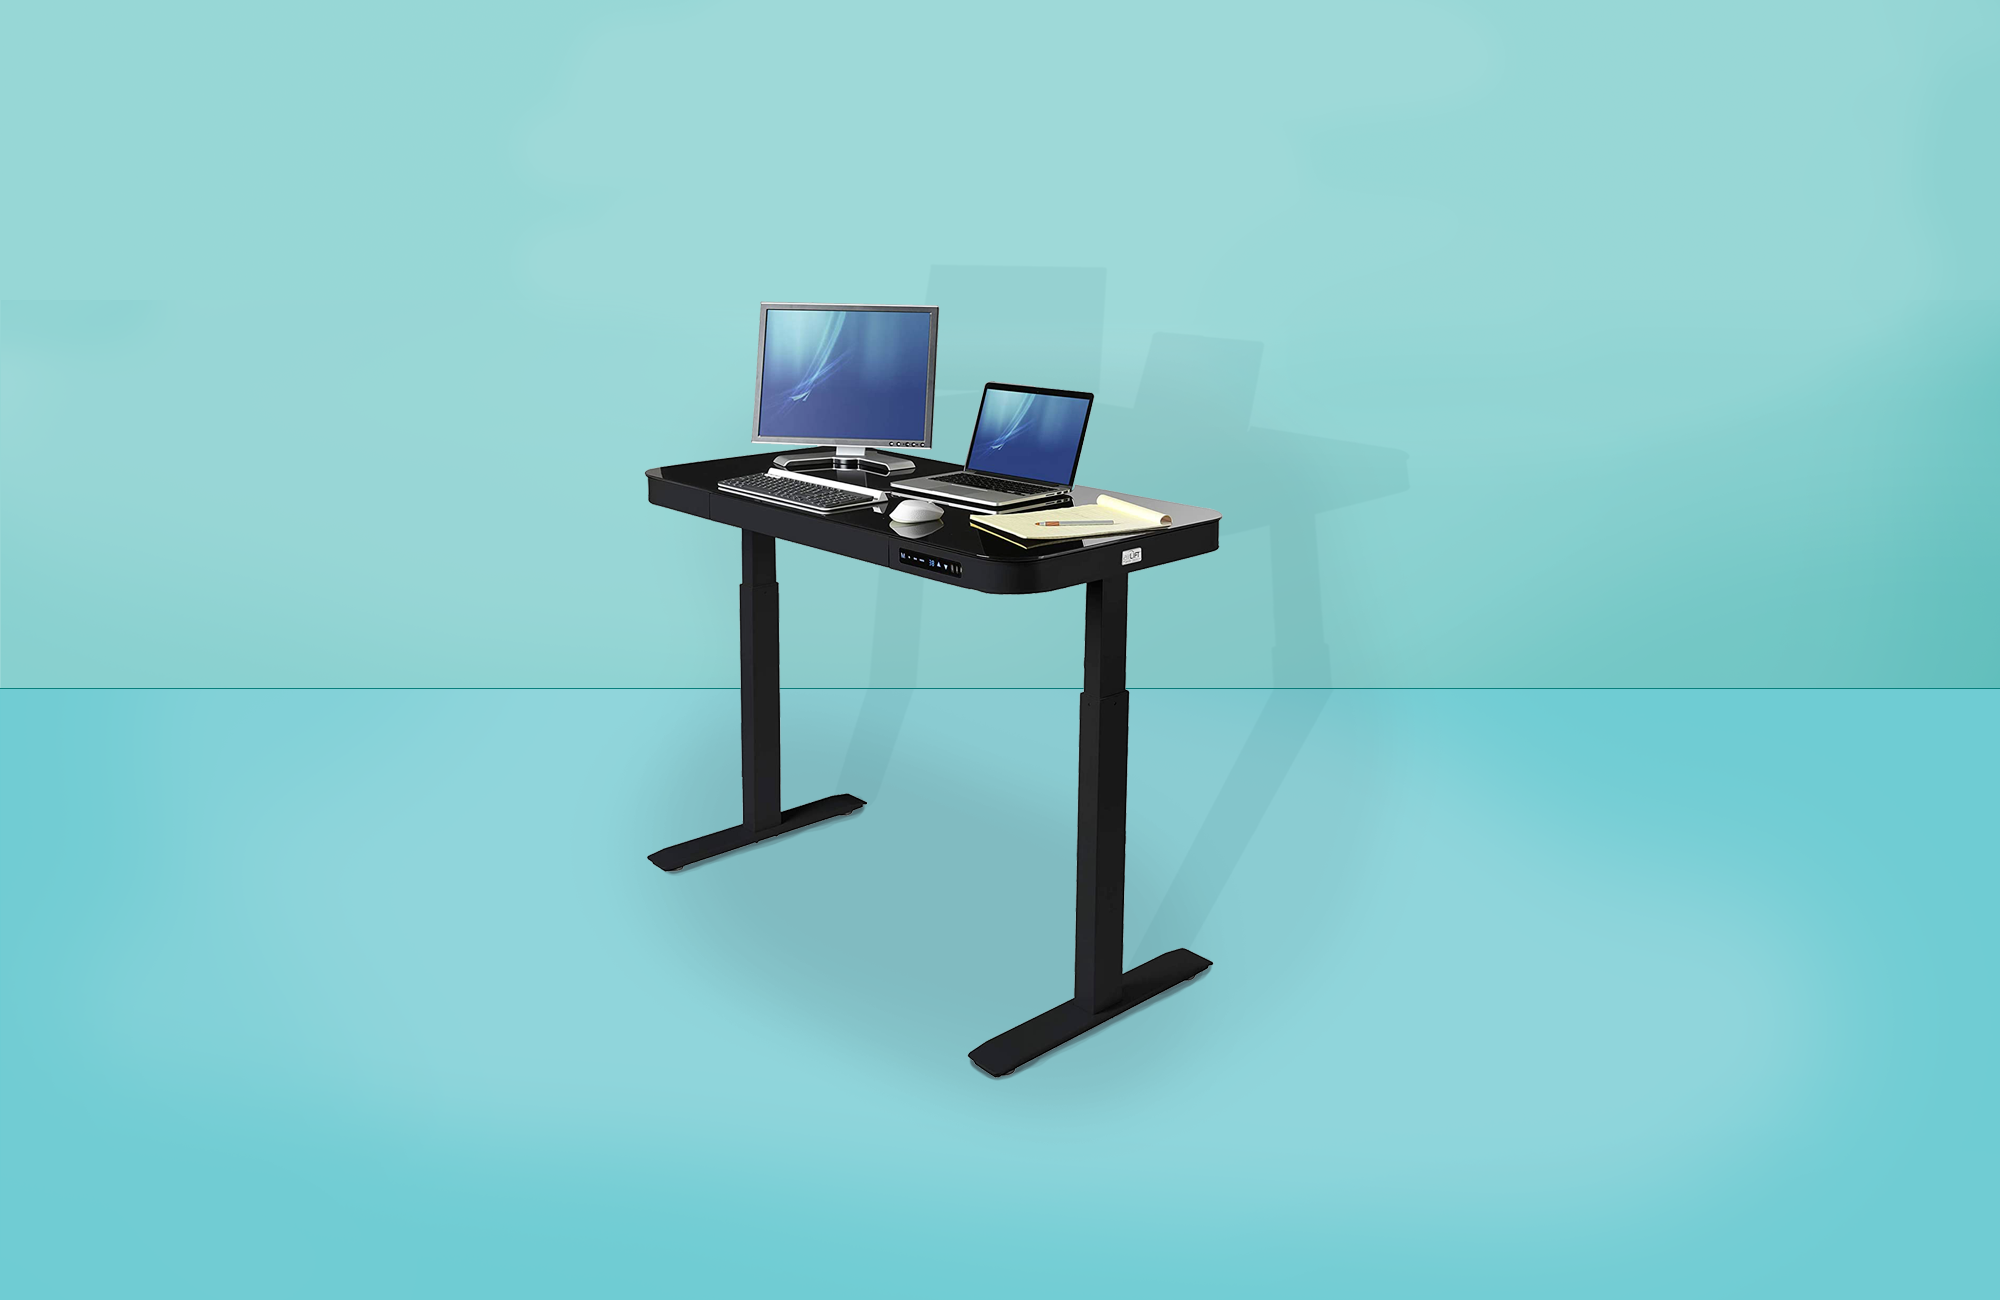 Home Office Adjustable Standing Desk Stand Up Desk Riser Computer Workstation US 